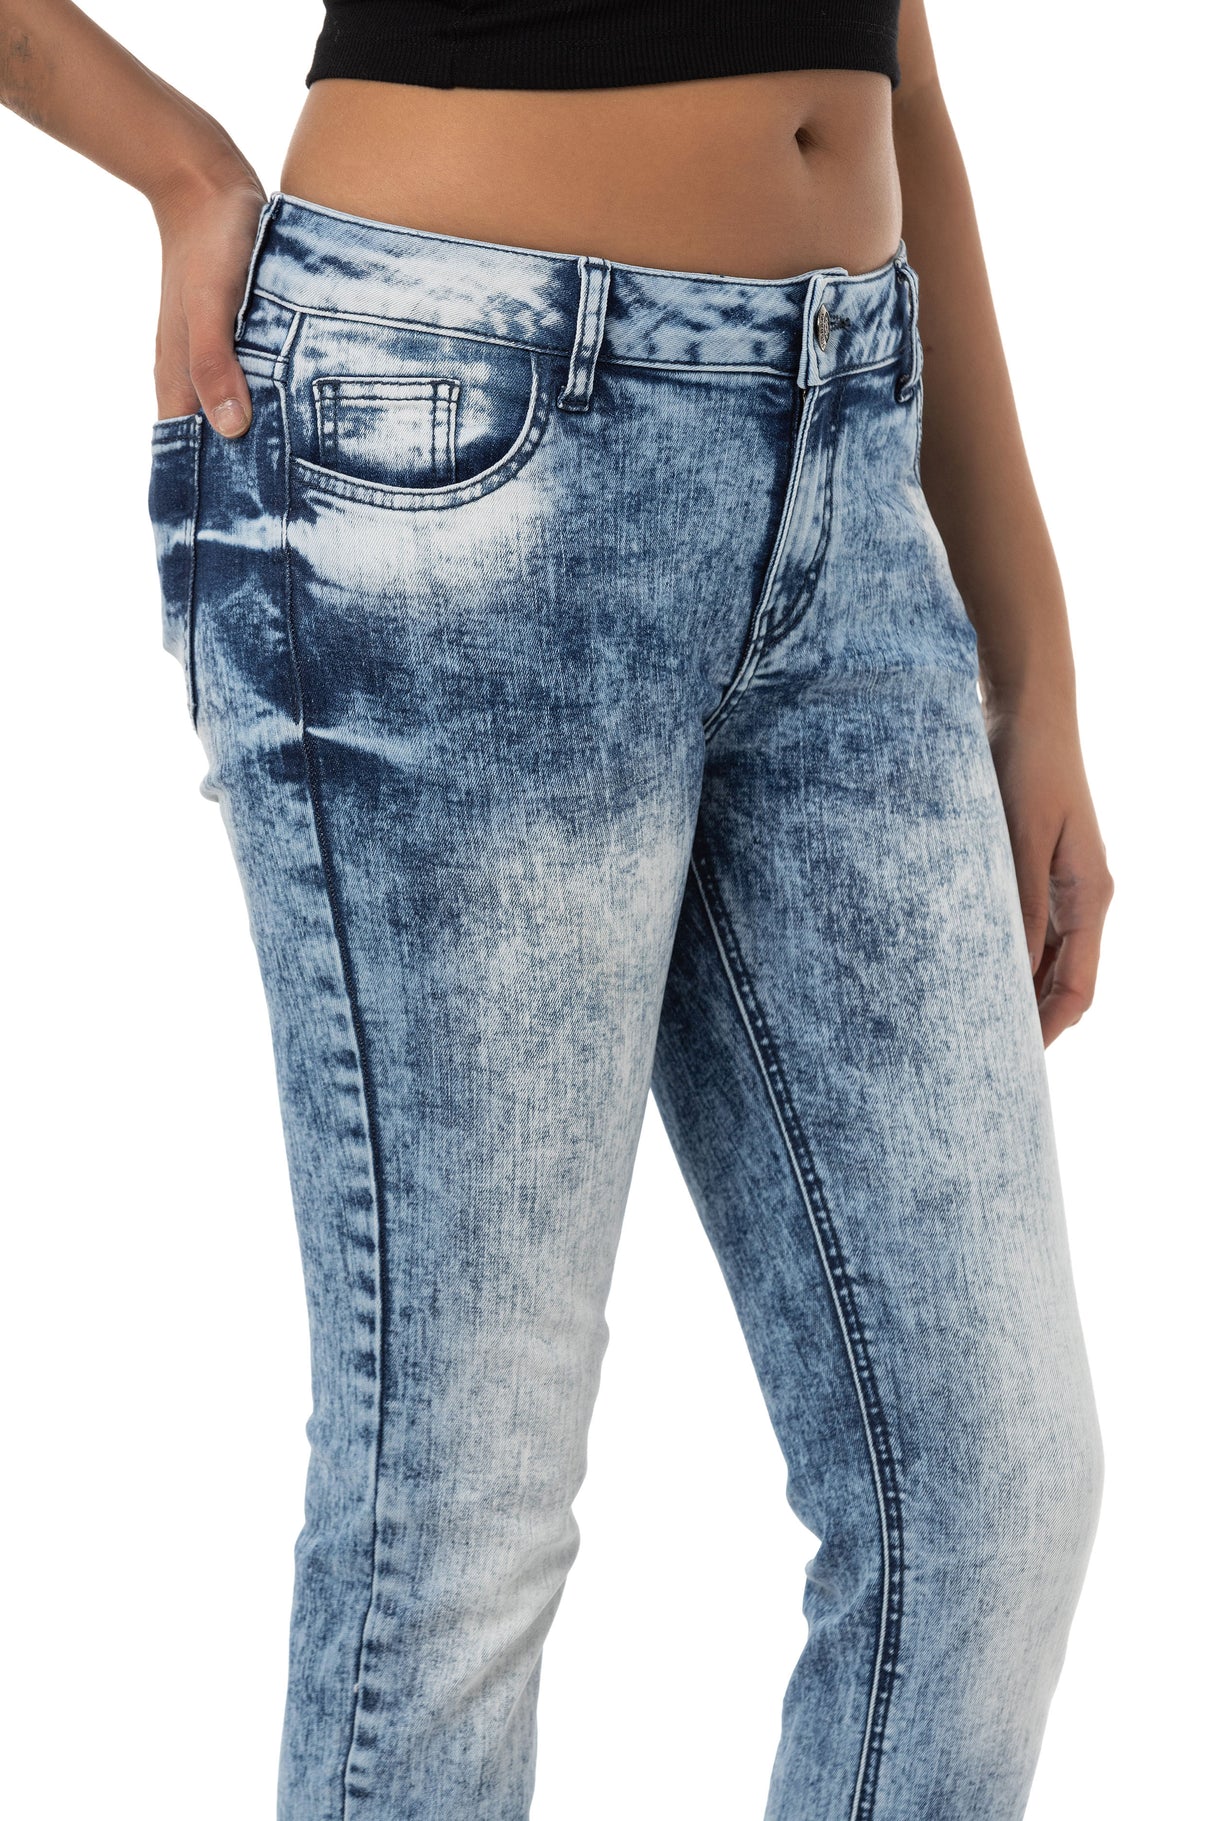 WD459 Women Slim-Fit Dżinsy w nowoczesnym wyglądzie